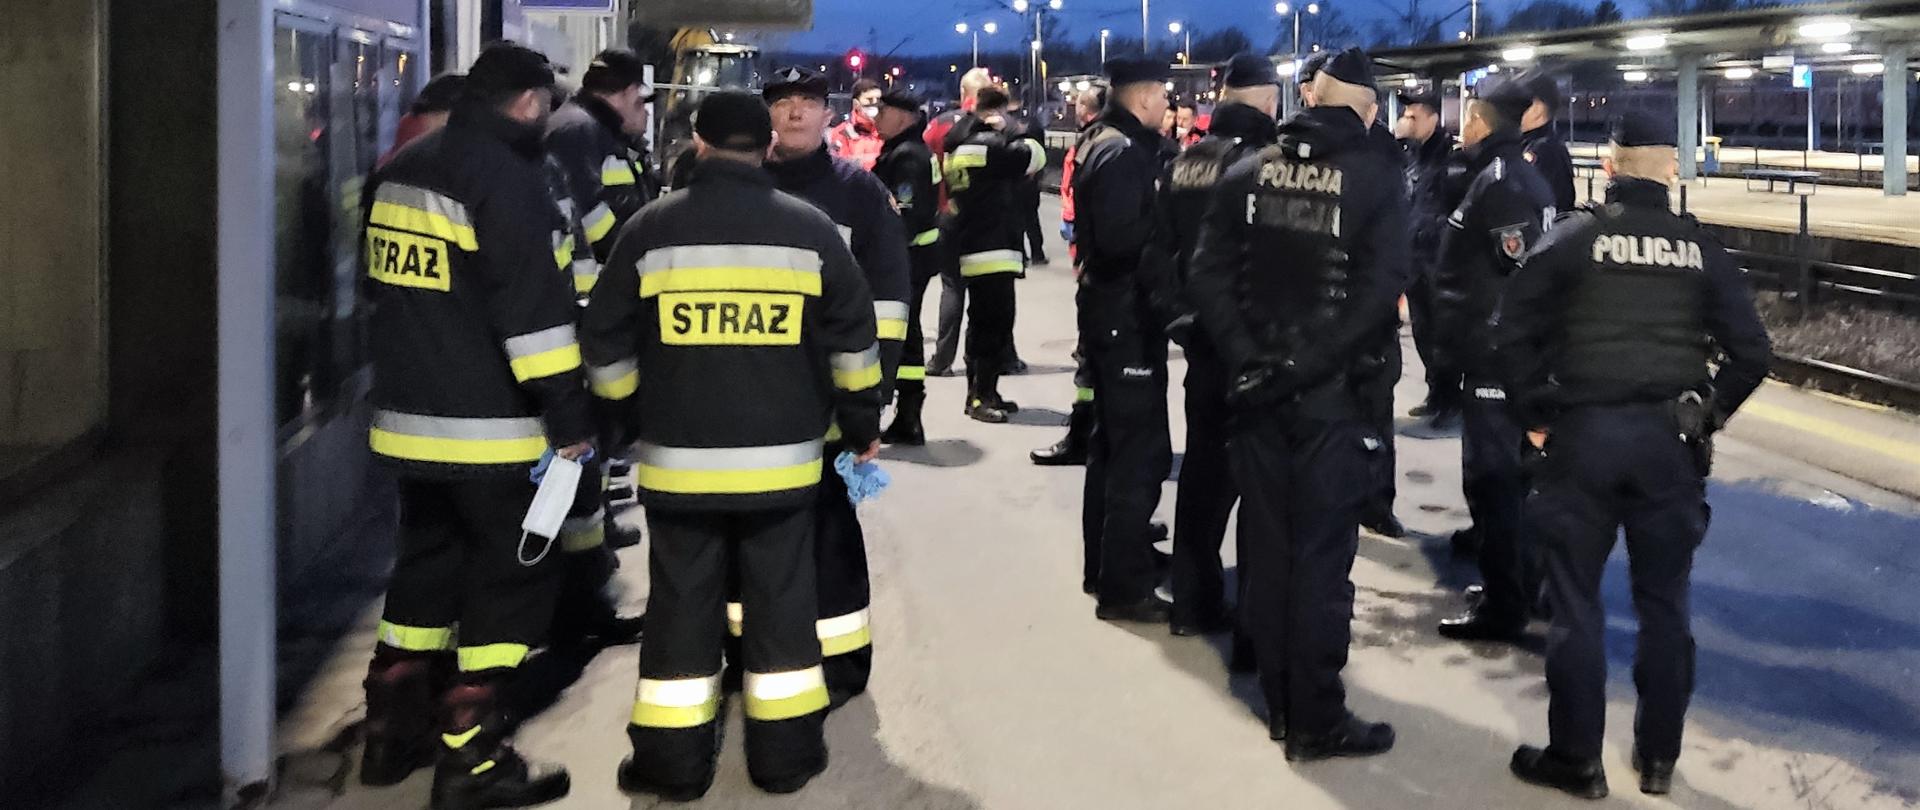 Na zdjęciu przedstawiono dworzec kolejowy w Kielcach. Na pierwszym funkcjonariusze Policji oraz strażacy oczekujący na zapowiedziany pociąg.